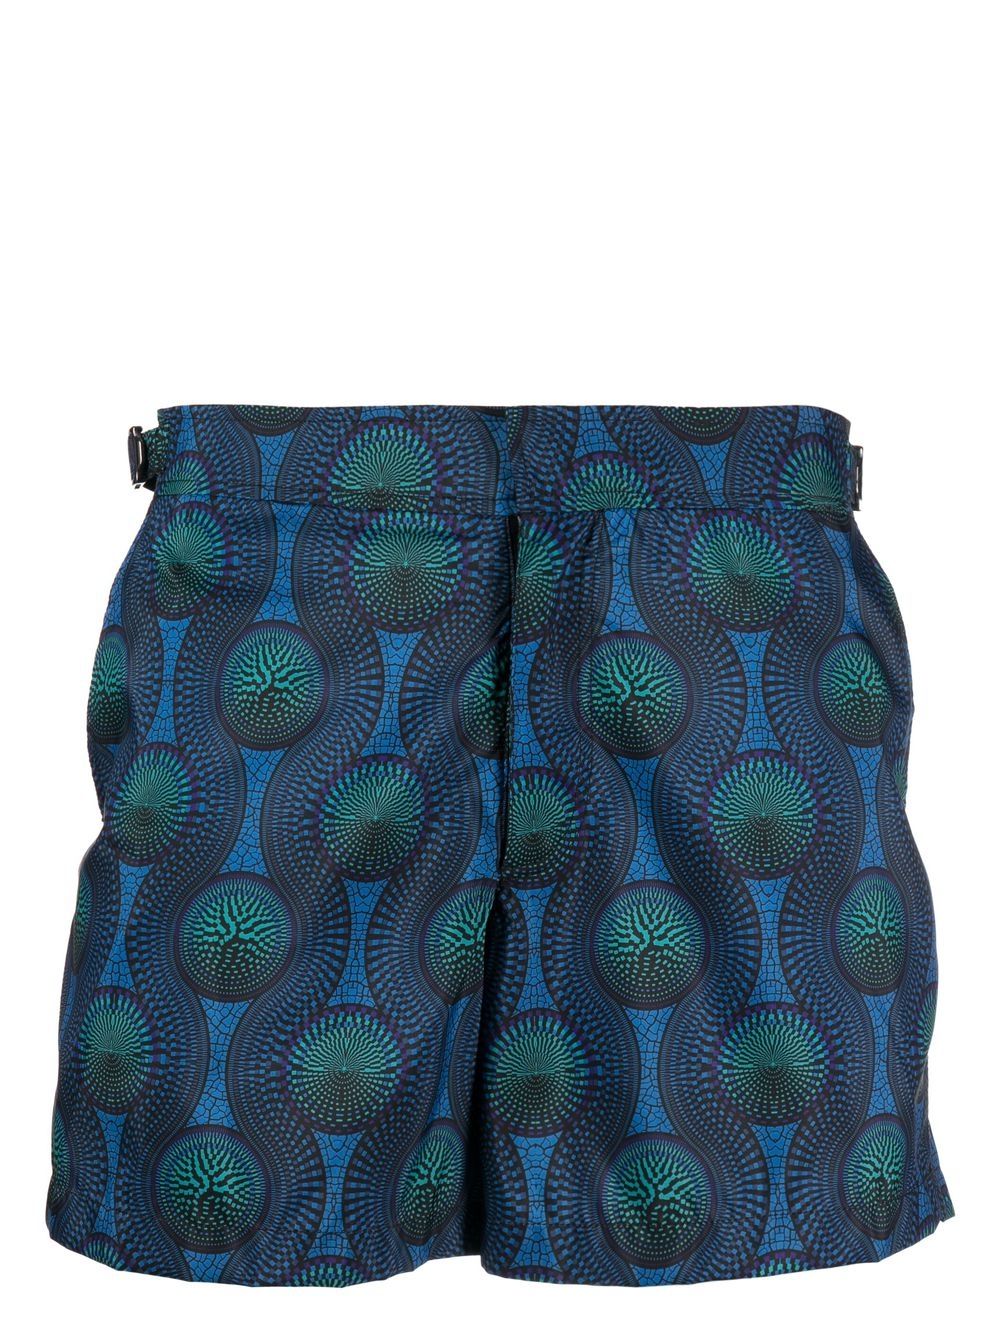 Ozwald boateng OZWALD BOATENG- Printed Swim Shorts